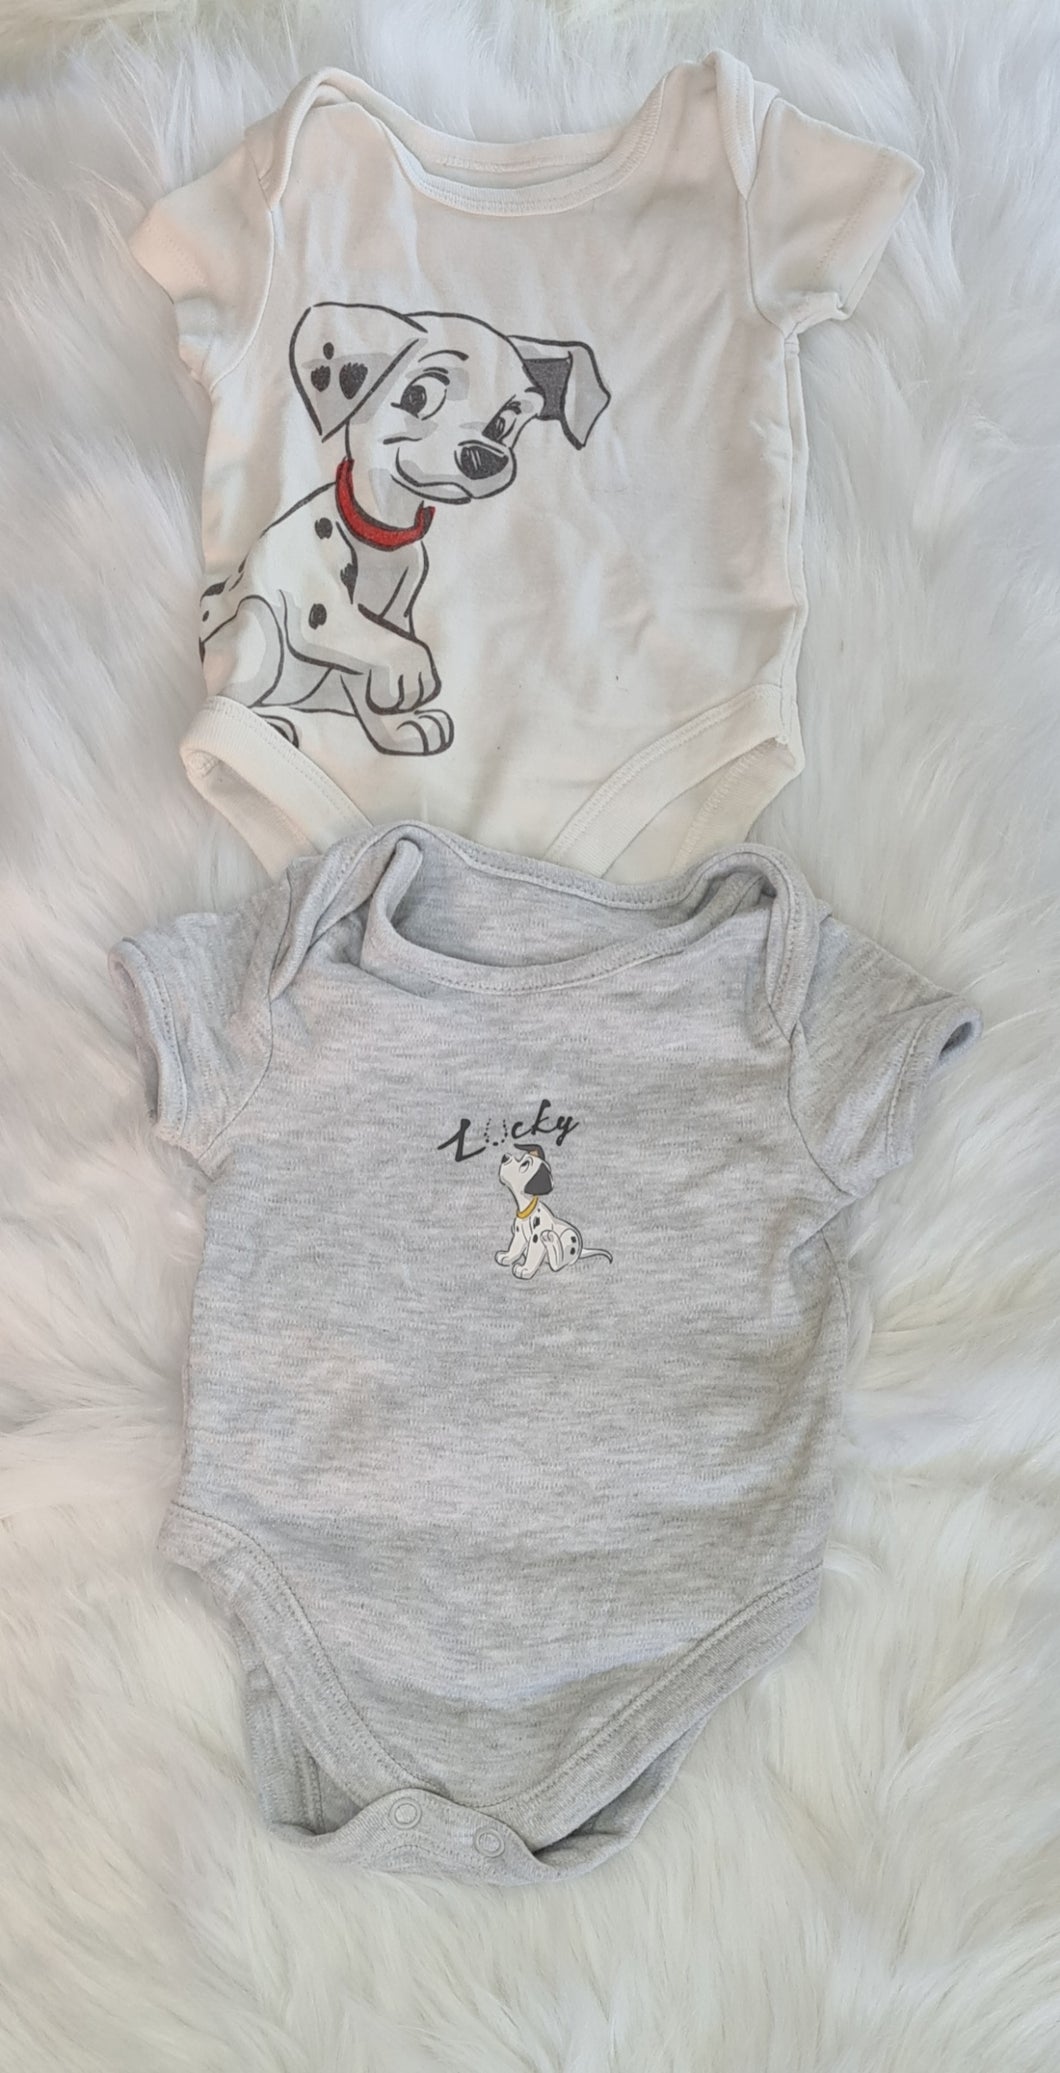 Boys 3-6 Months - Disney/101 Dalmatian 2 Vest Set